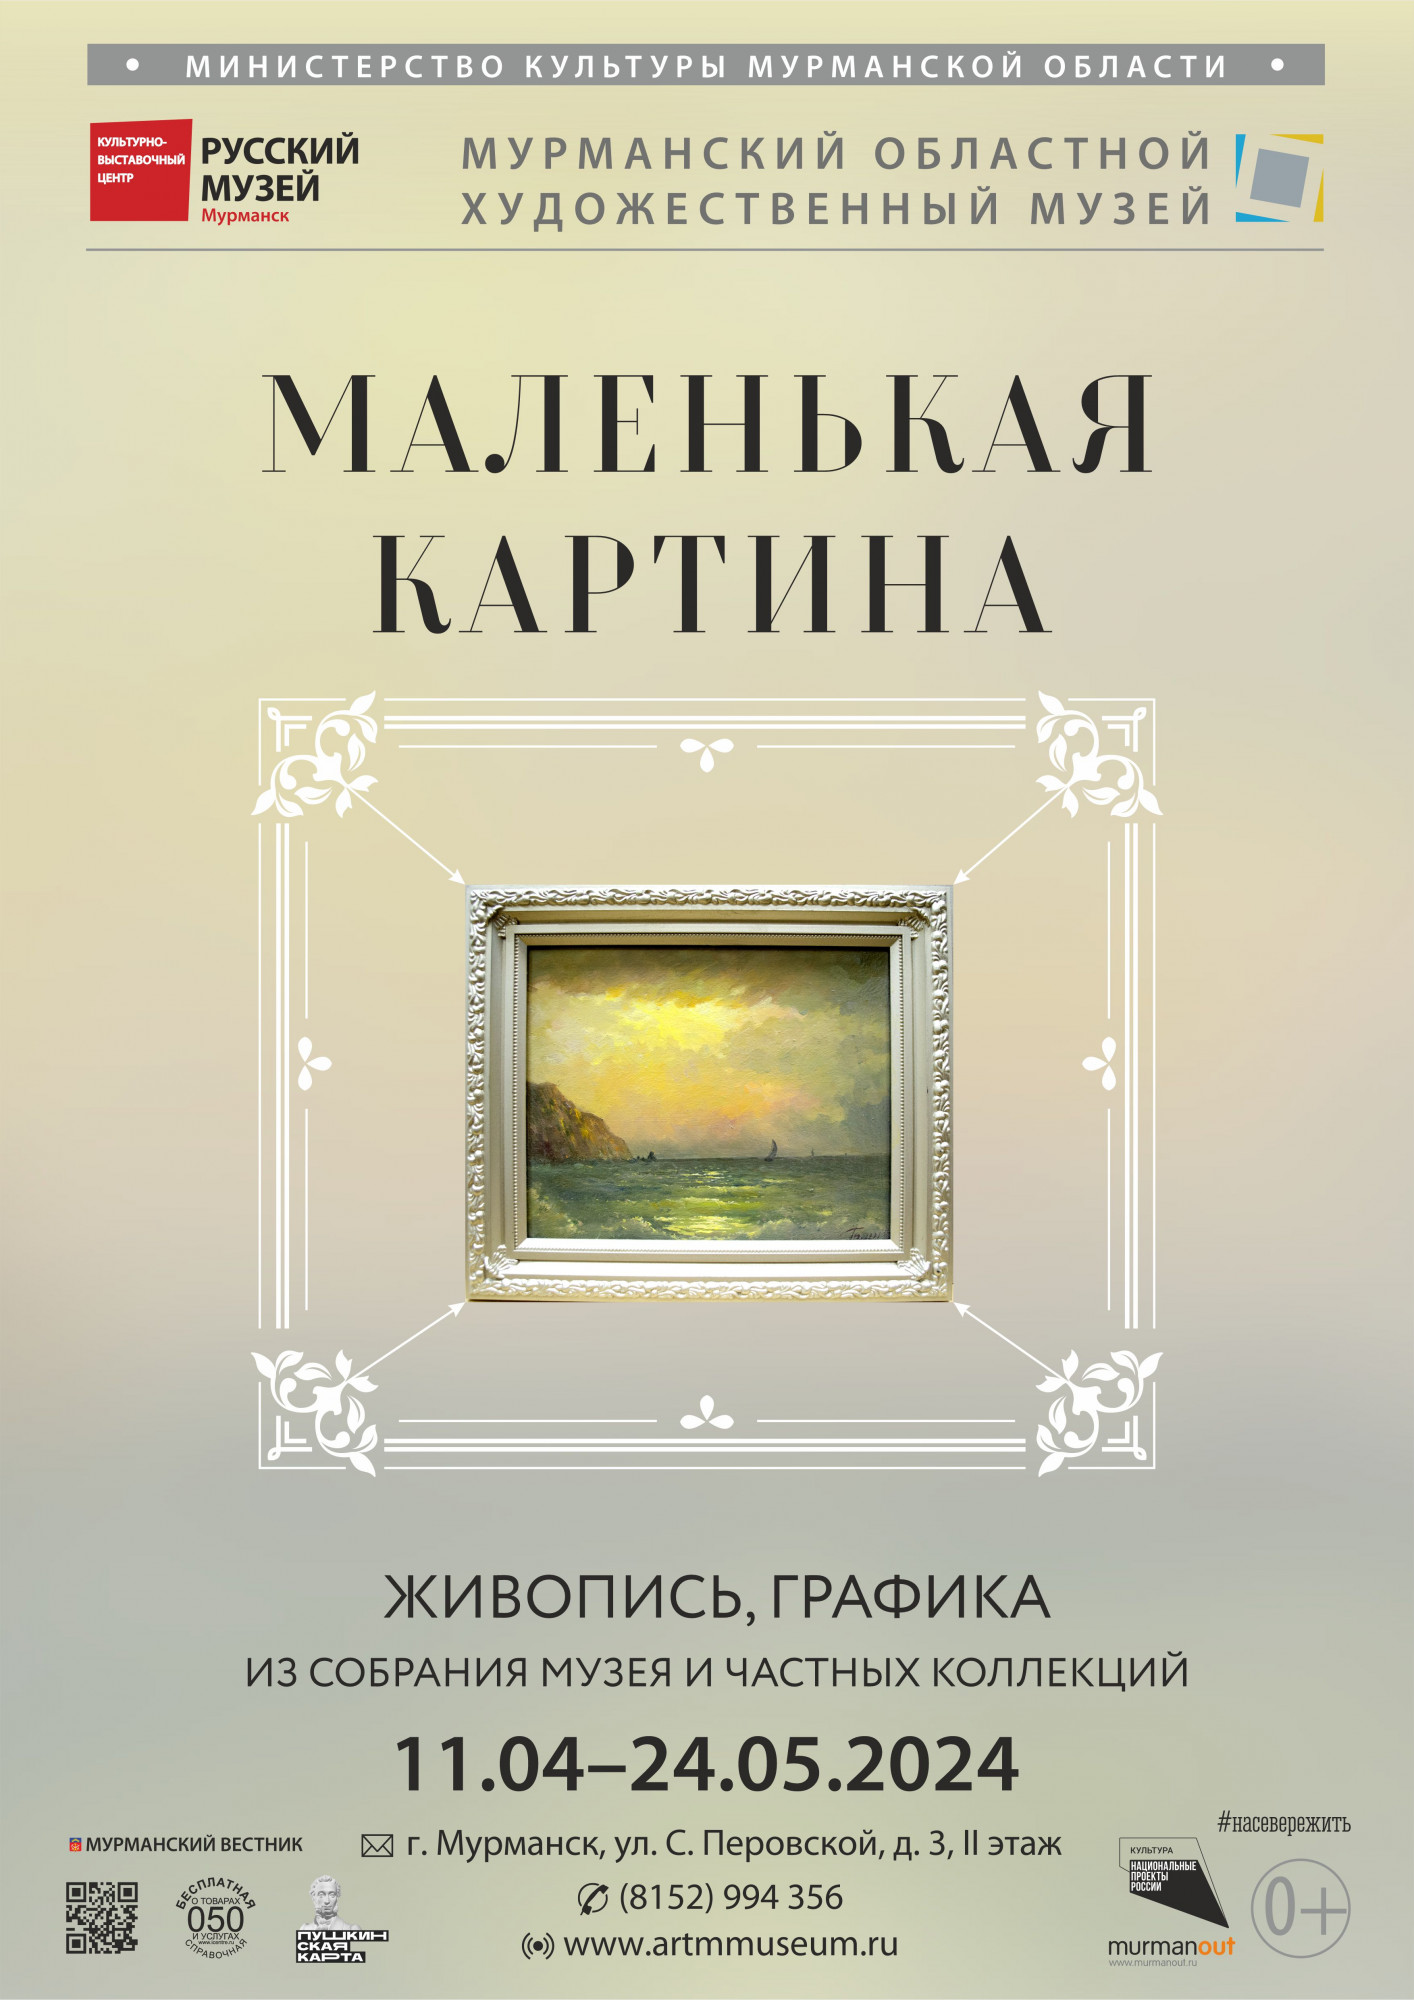 Открытие выставки «Маленькая картина» в Мурманске